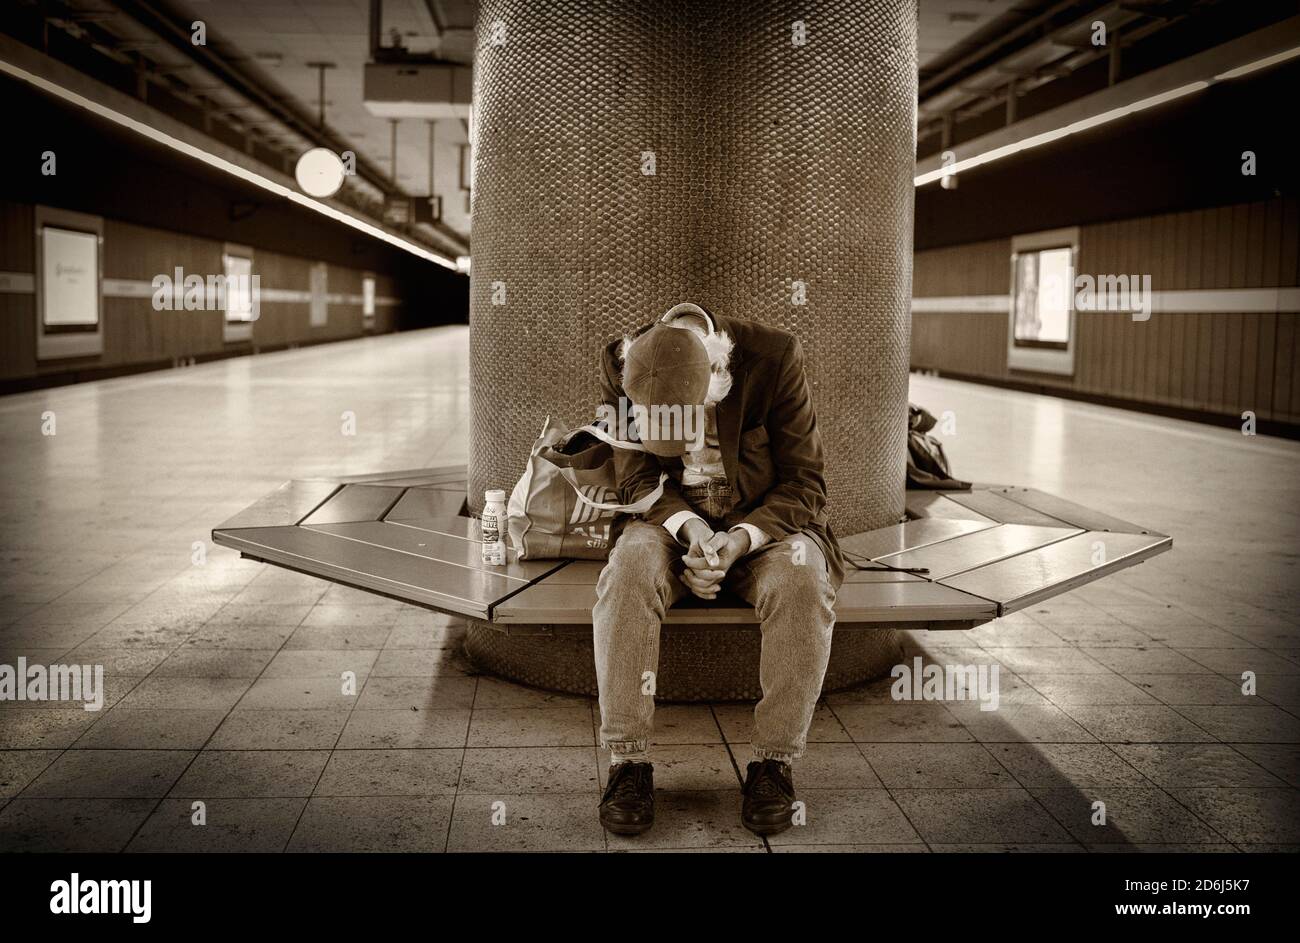 Obdachlose, Berber, sitzend im Wartebereich eines S-Bahnhofes, Stuttgart, Baden-Württemberg, Deutschland Stockfoto